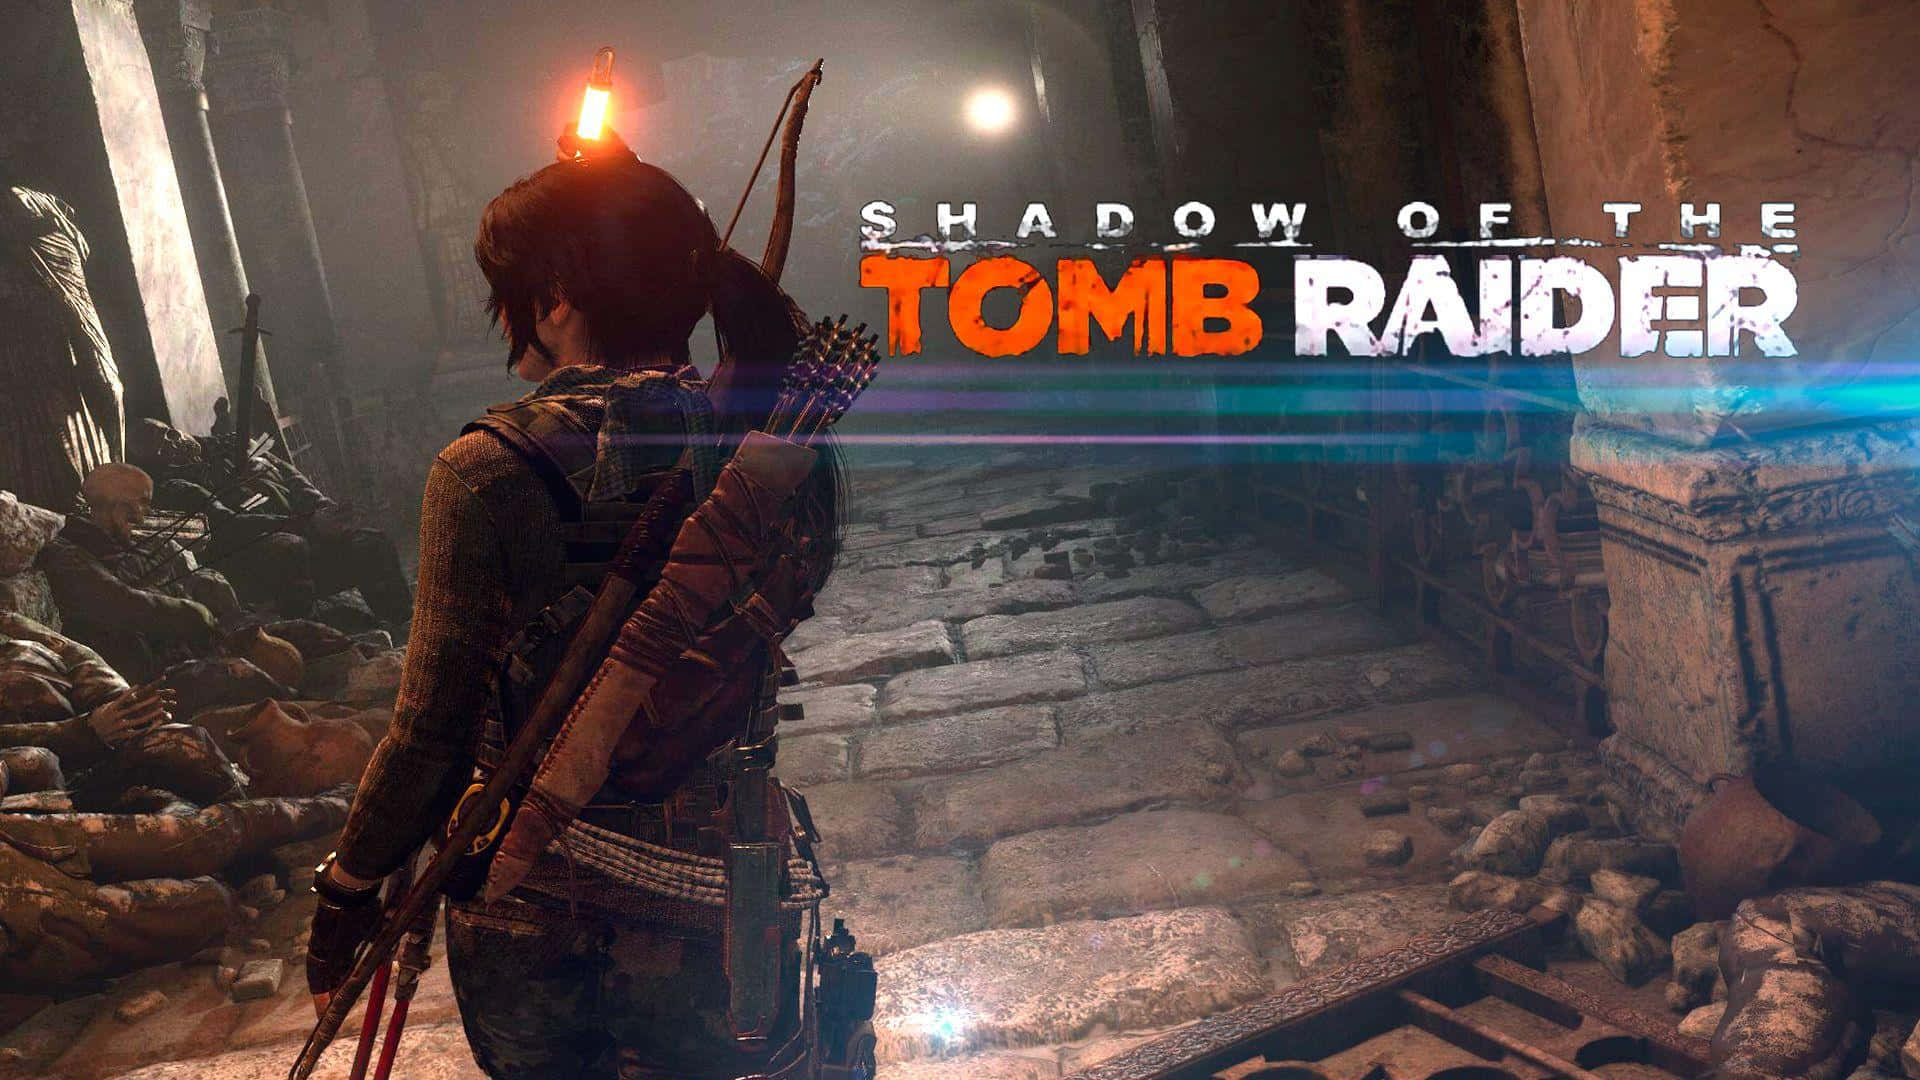 Lara Croft i det bedste skygge af Tomb Raider side-scrollende action eventyr.